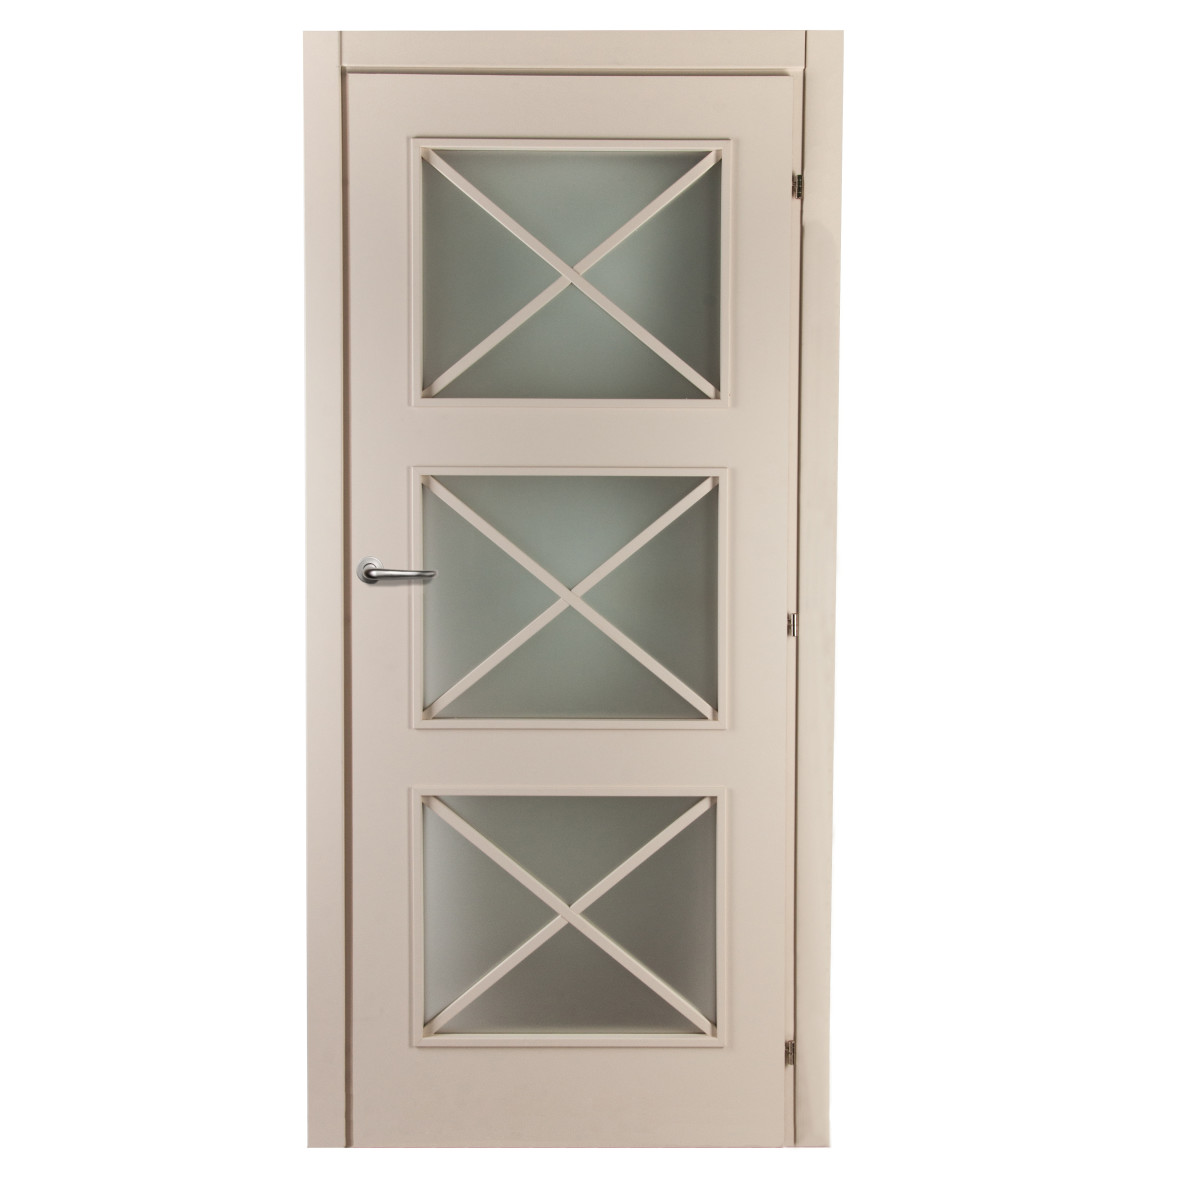 Дверь межкомнатная остекленная Камелия 70х200 см, цвет магнолия, с фурнитурой